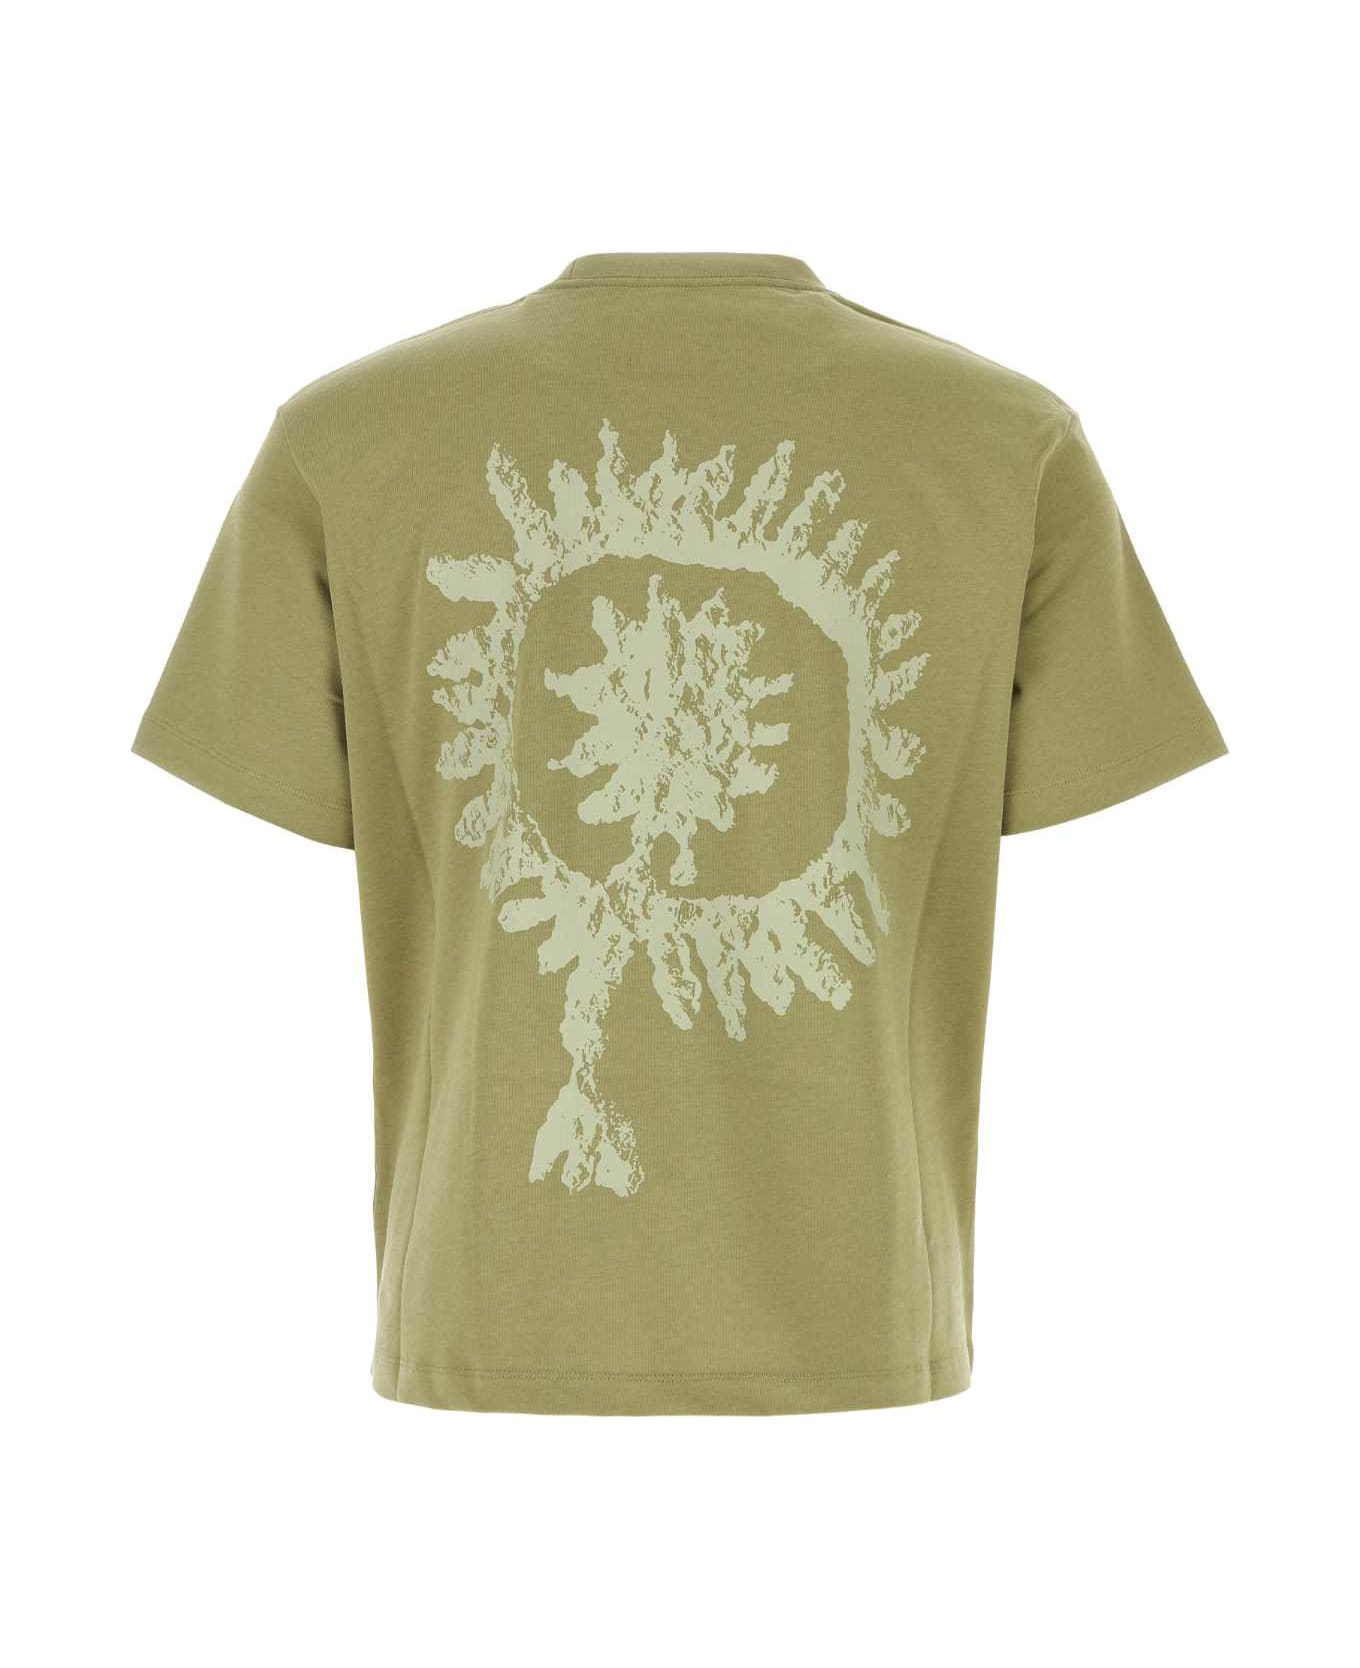 ROA Khaki Cotton T-shirt - GRN0025